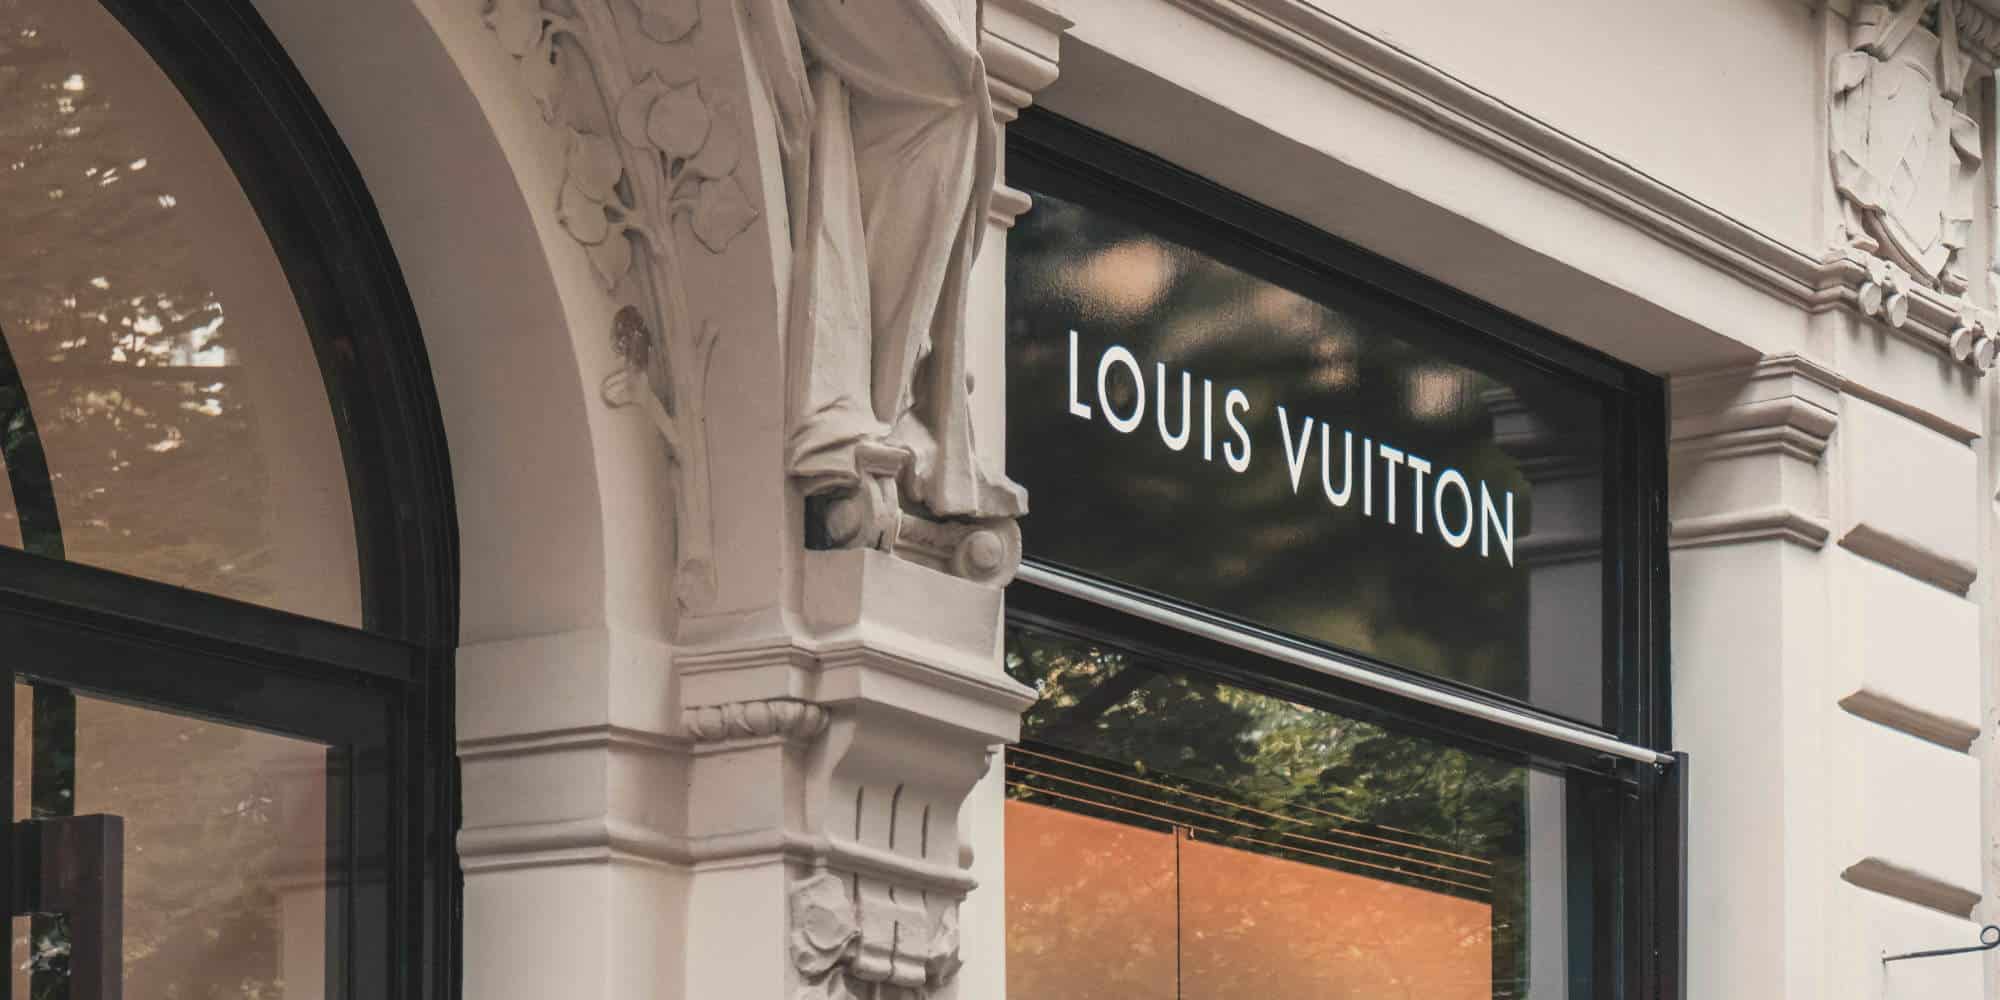 Κατάστημα Louis Vuitton, που ανήκει στον όμιλο LVMH